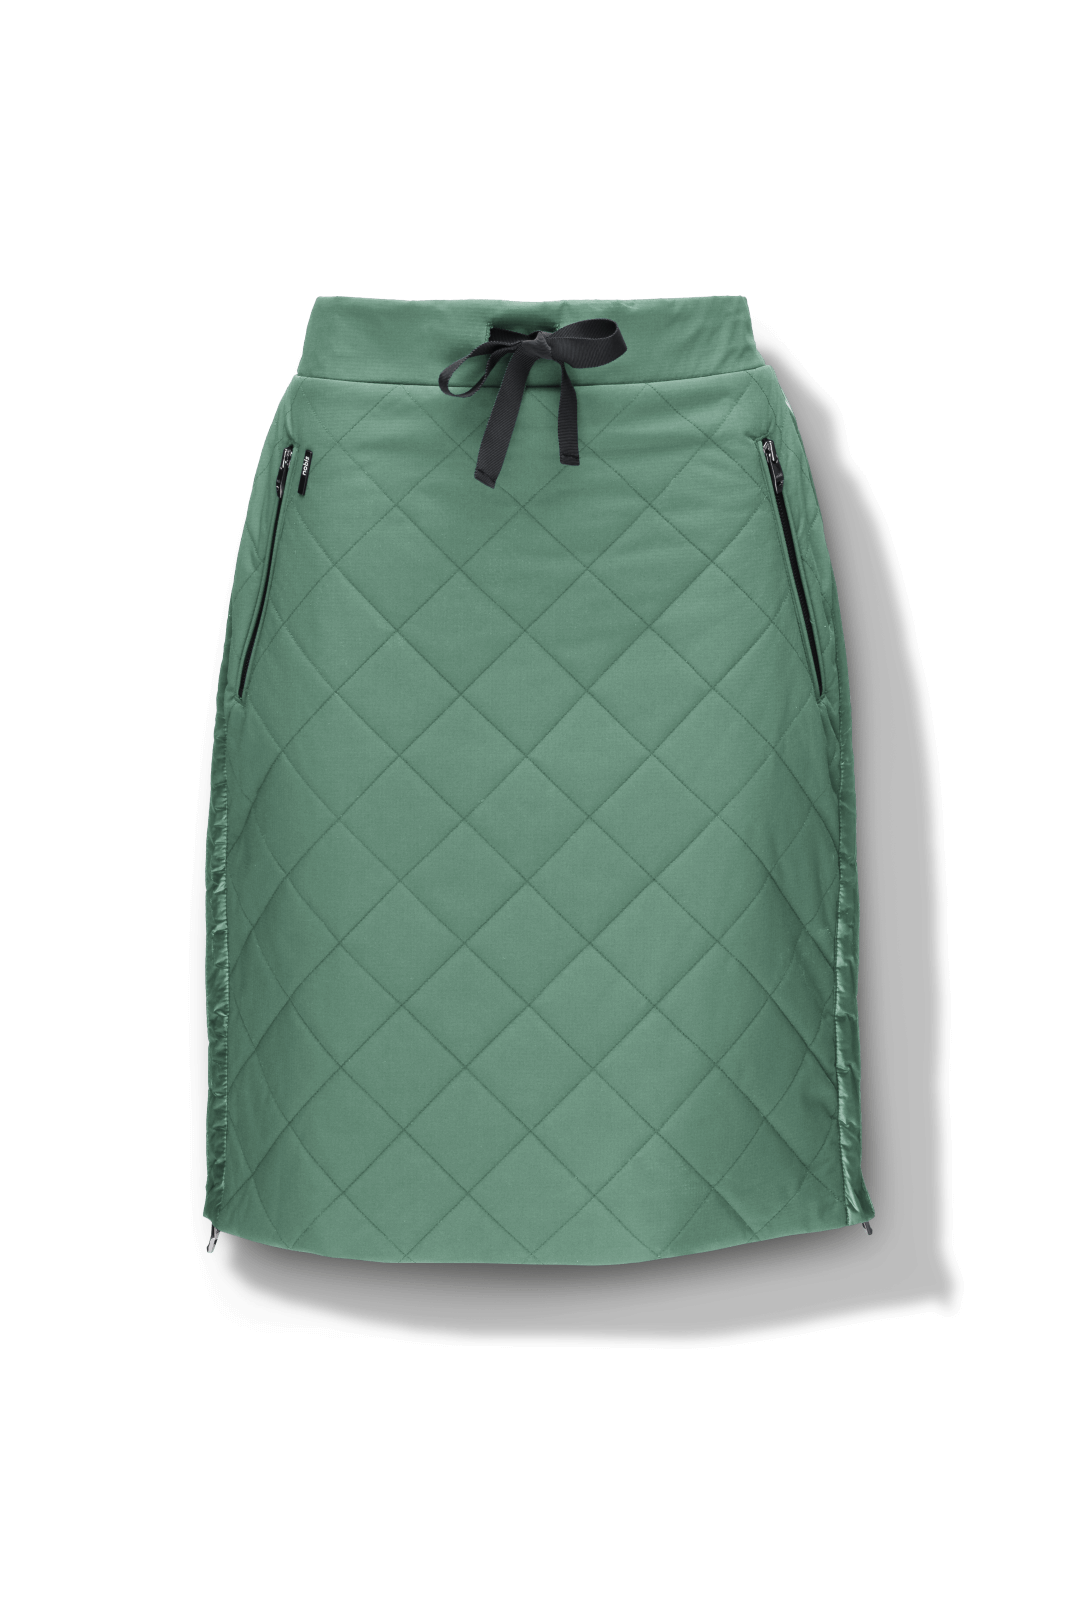 Phora Women's Tailored Skirt